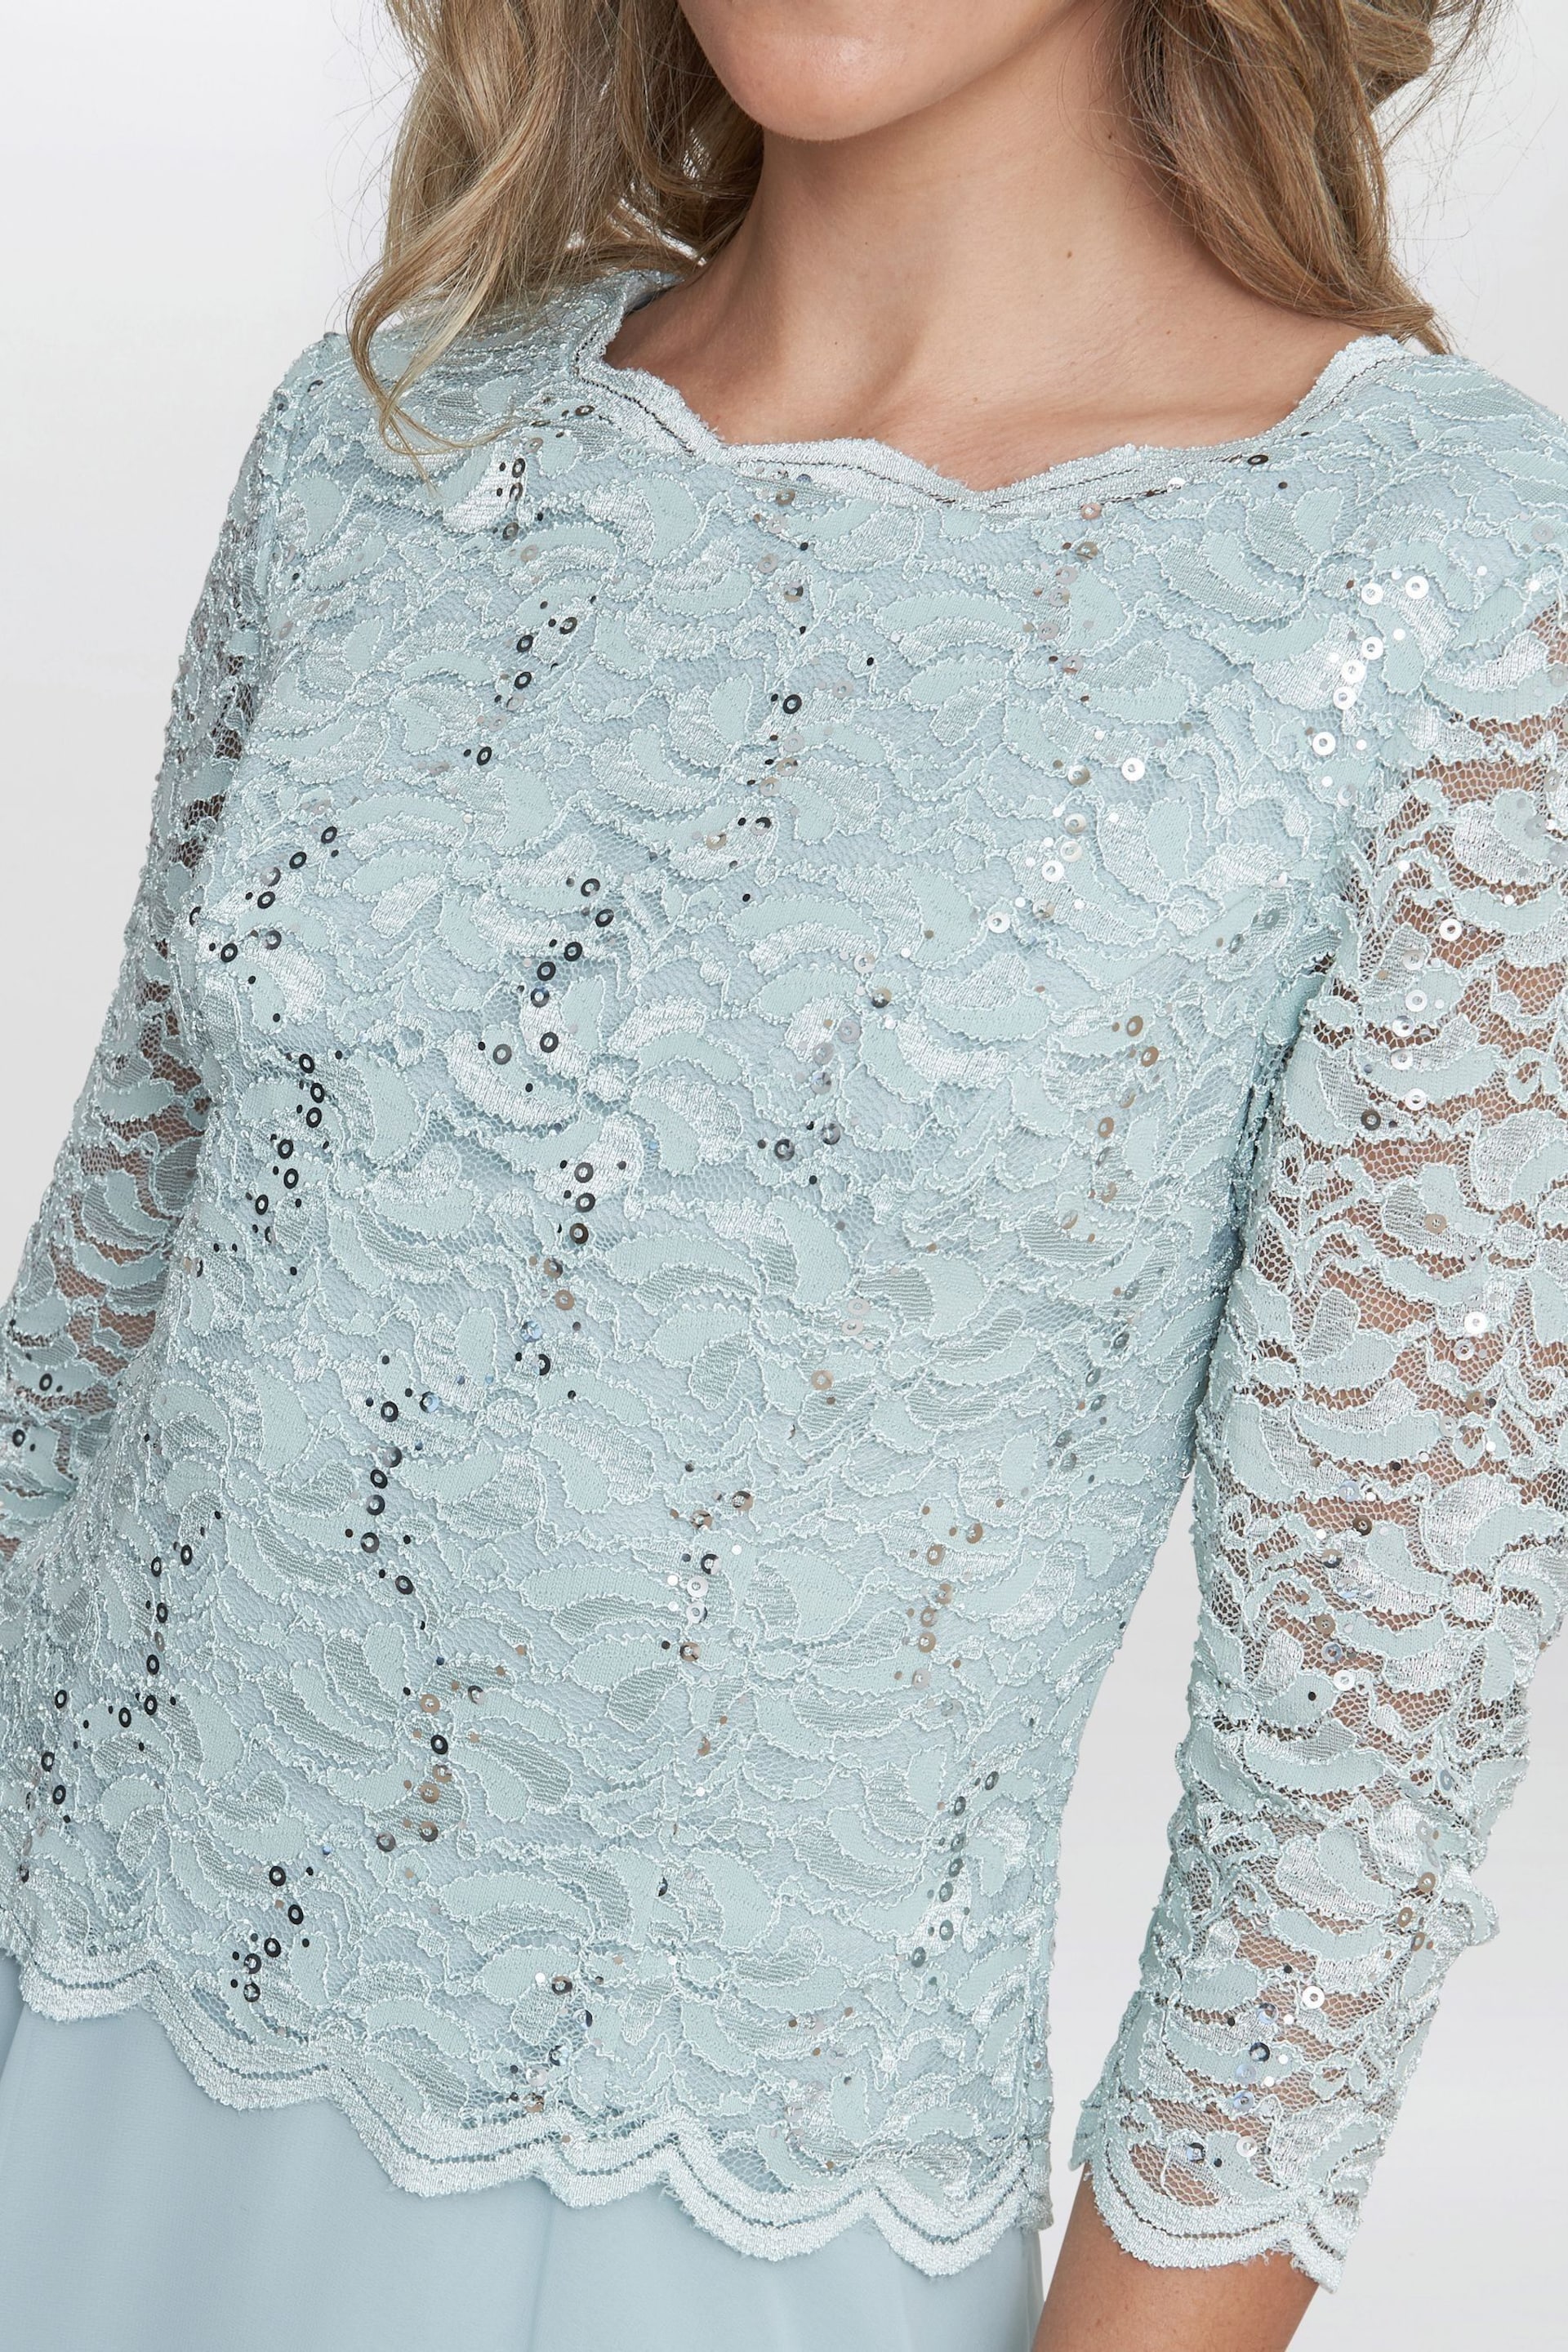 Gina Bacconi Rona Midi Dress With Lace Bodice & Chiffon Skirt - Image 4 of 6